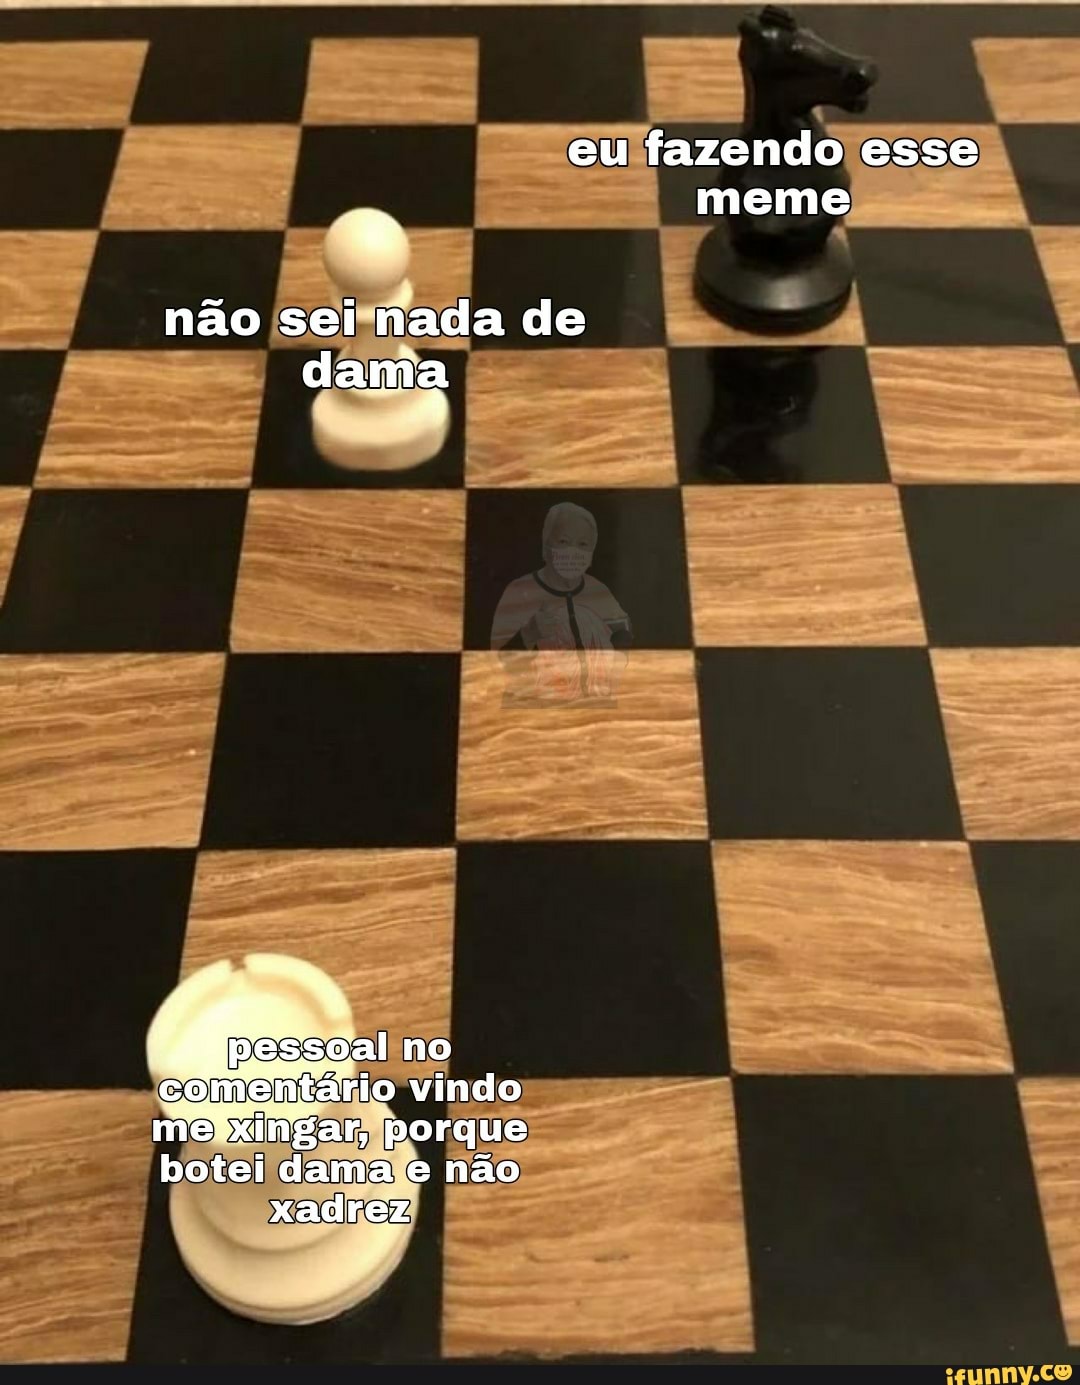 Eu fazendo esse meme não sei nada de damia no comentário vindo ma porque  botei dama e não xadrez - iFunny Brazil